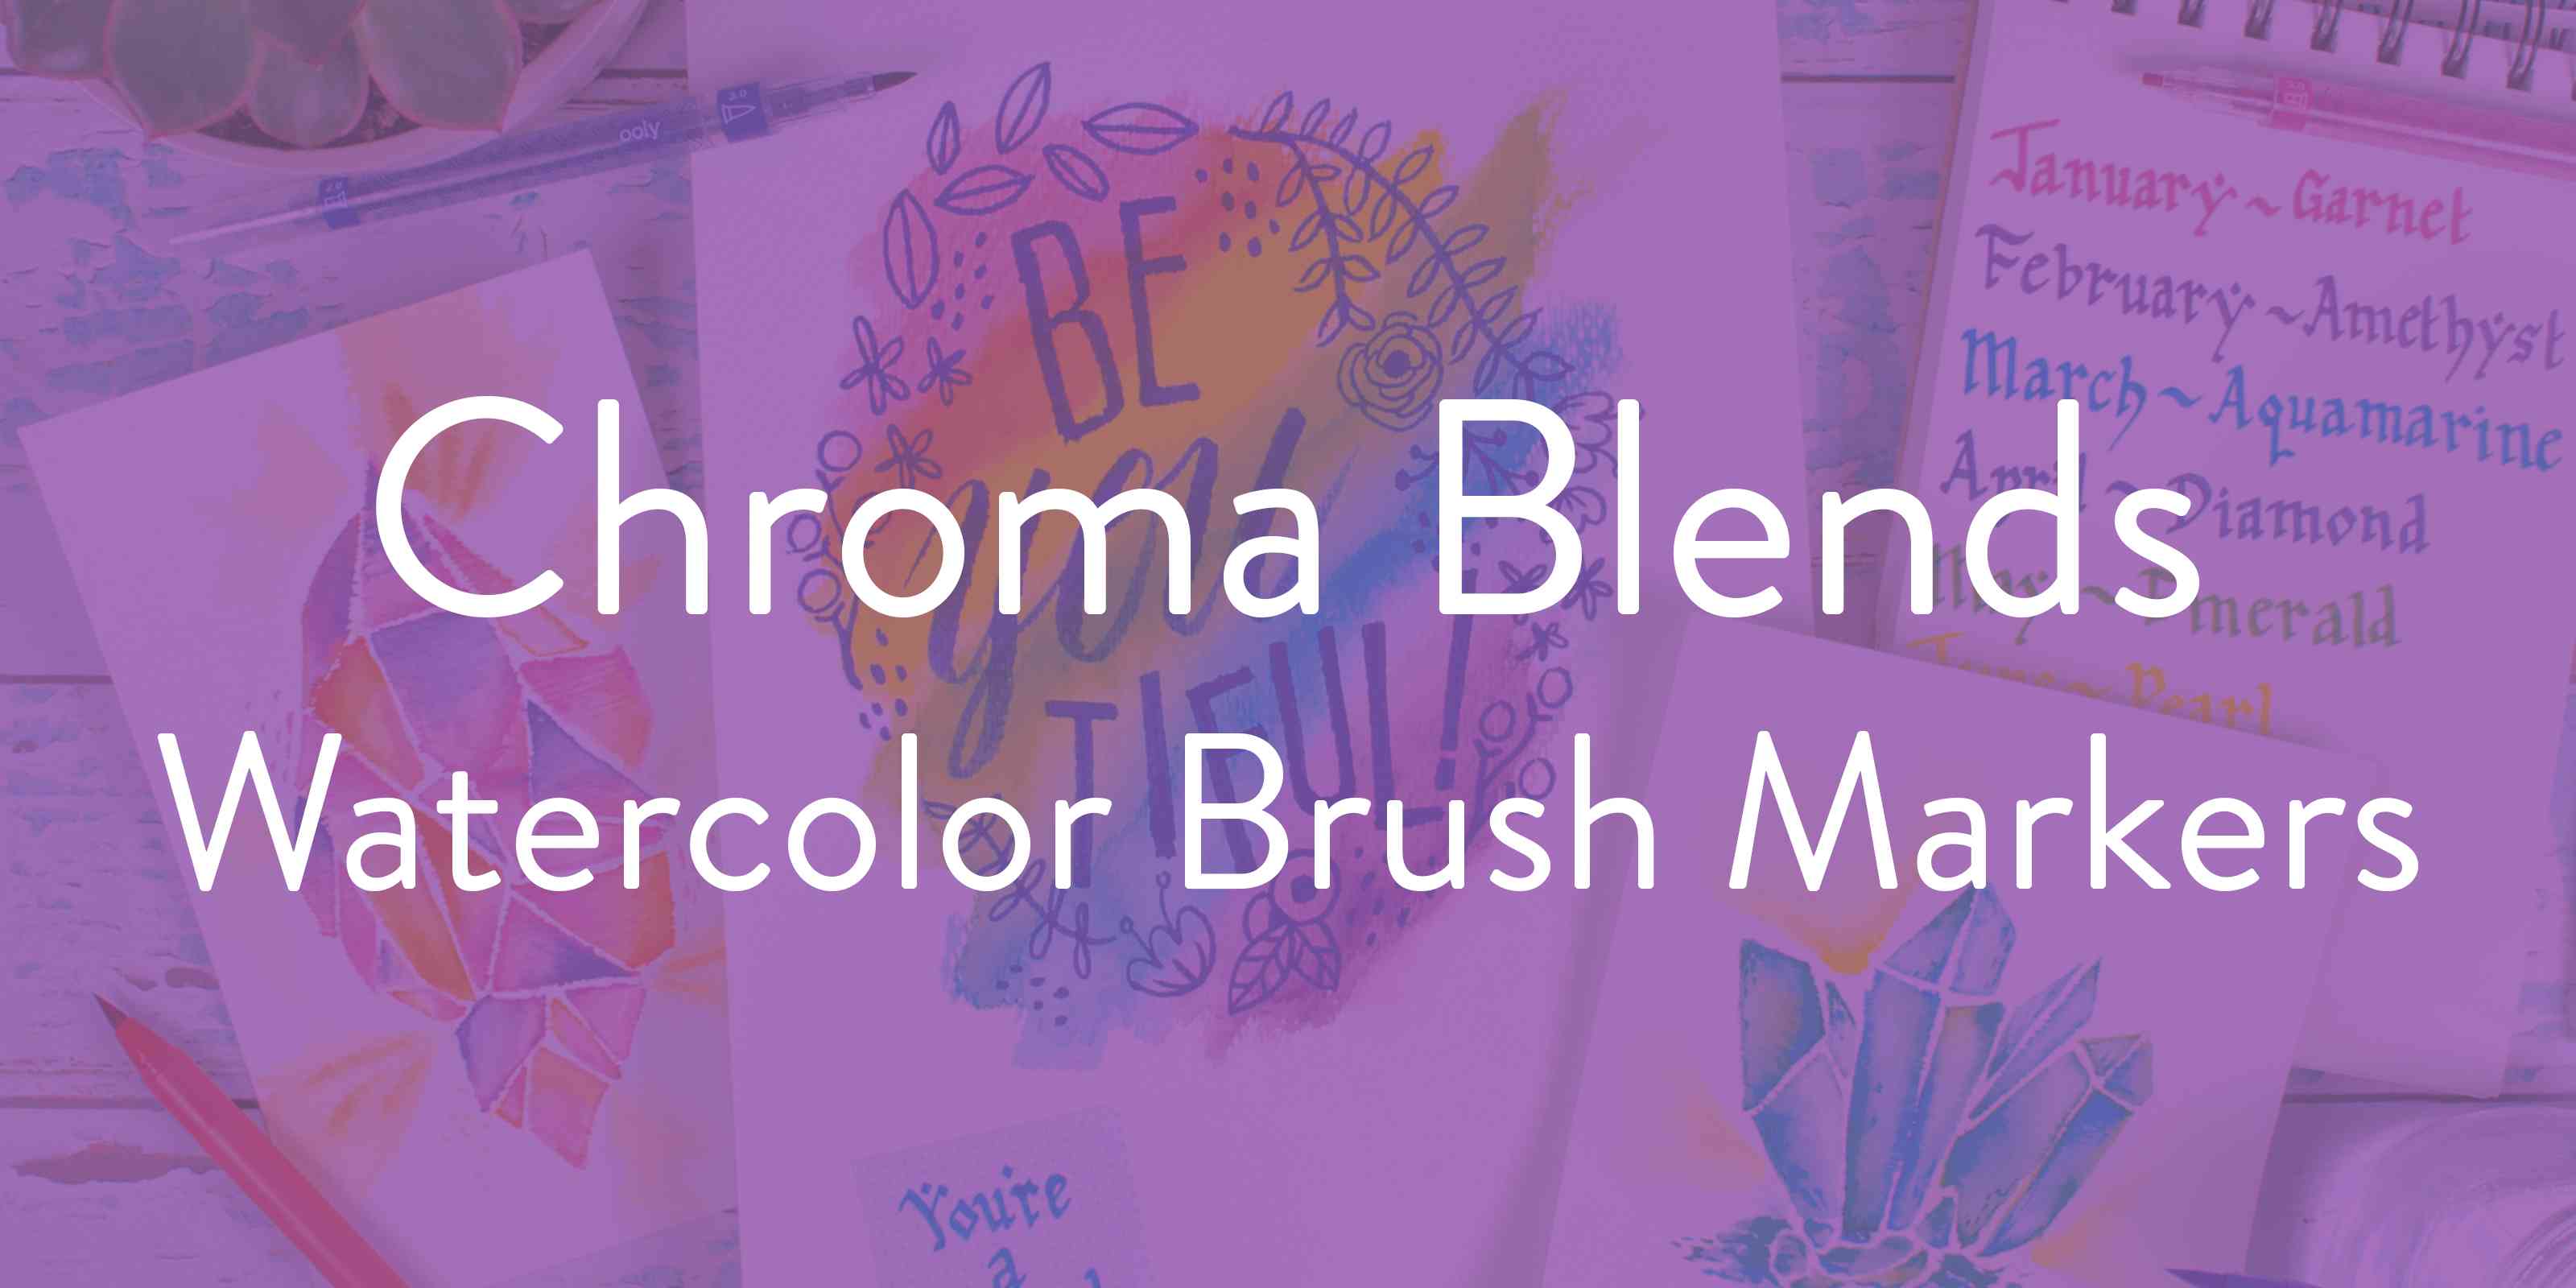 Chroma Blends Watercolor Brush Markers - Philadelphia Museum Of Art